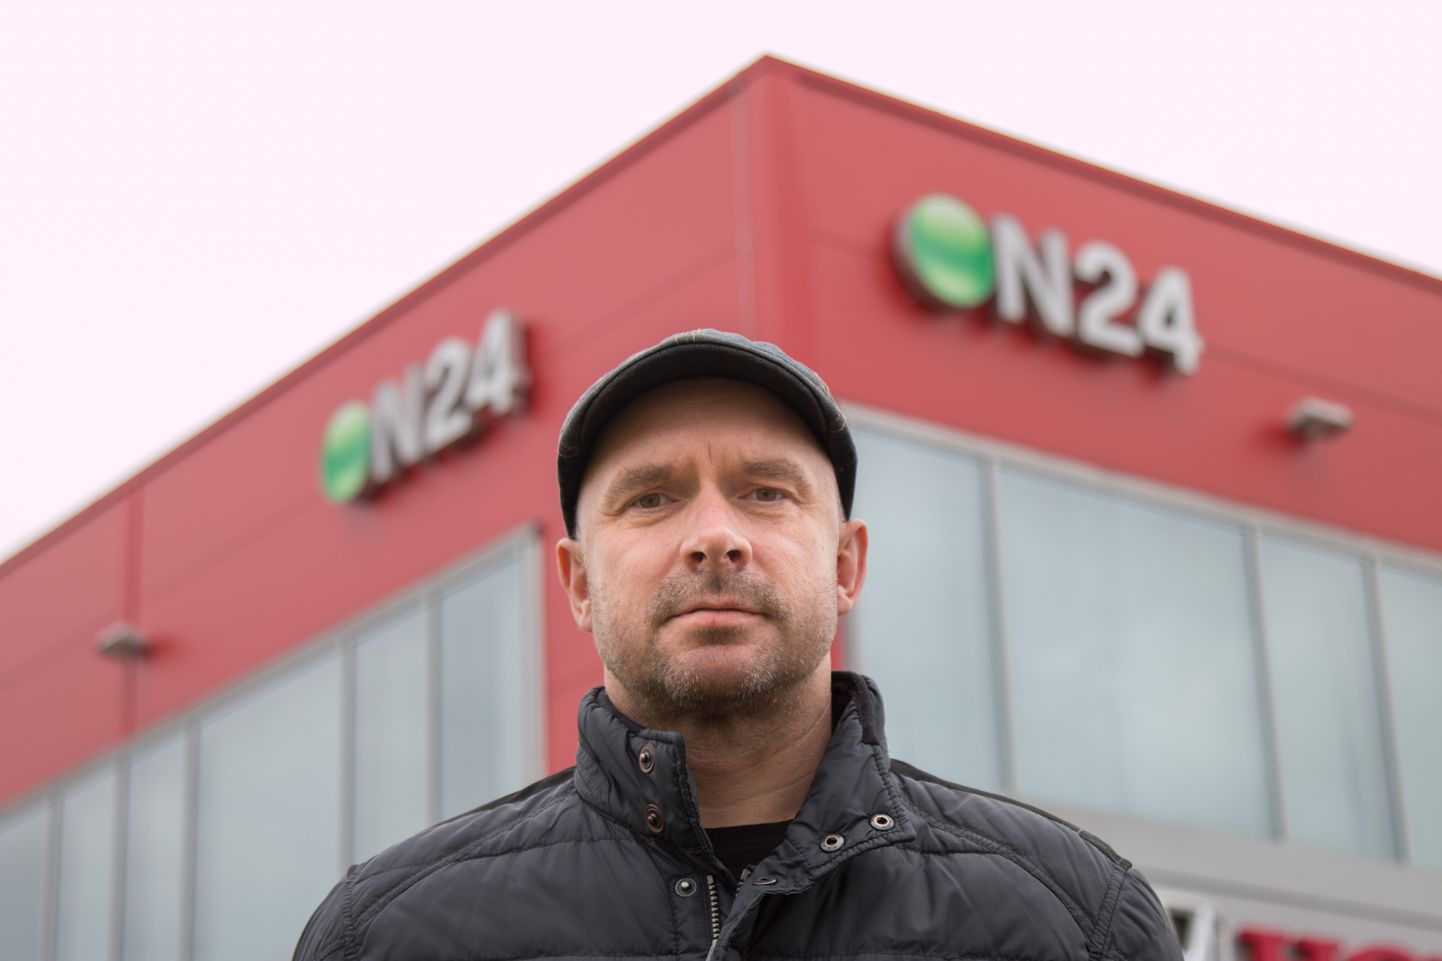 ON24 mööblikaubamaja nõukogu liige Peep Kuld ütleb, et selles mõttes on Eesti unikaalne turg maailmas, kus mööblikaubanduse liider on internetikaubamaja.